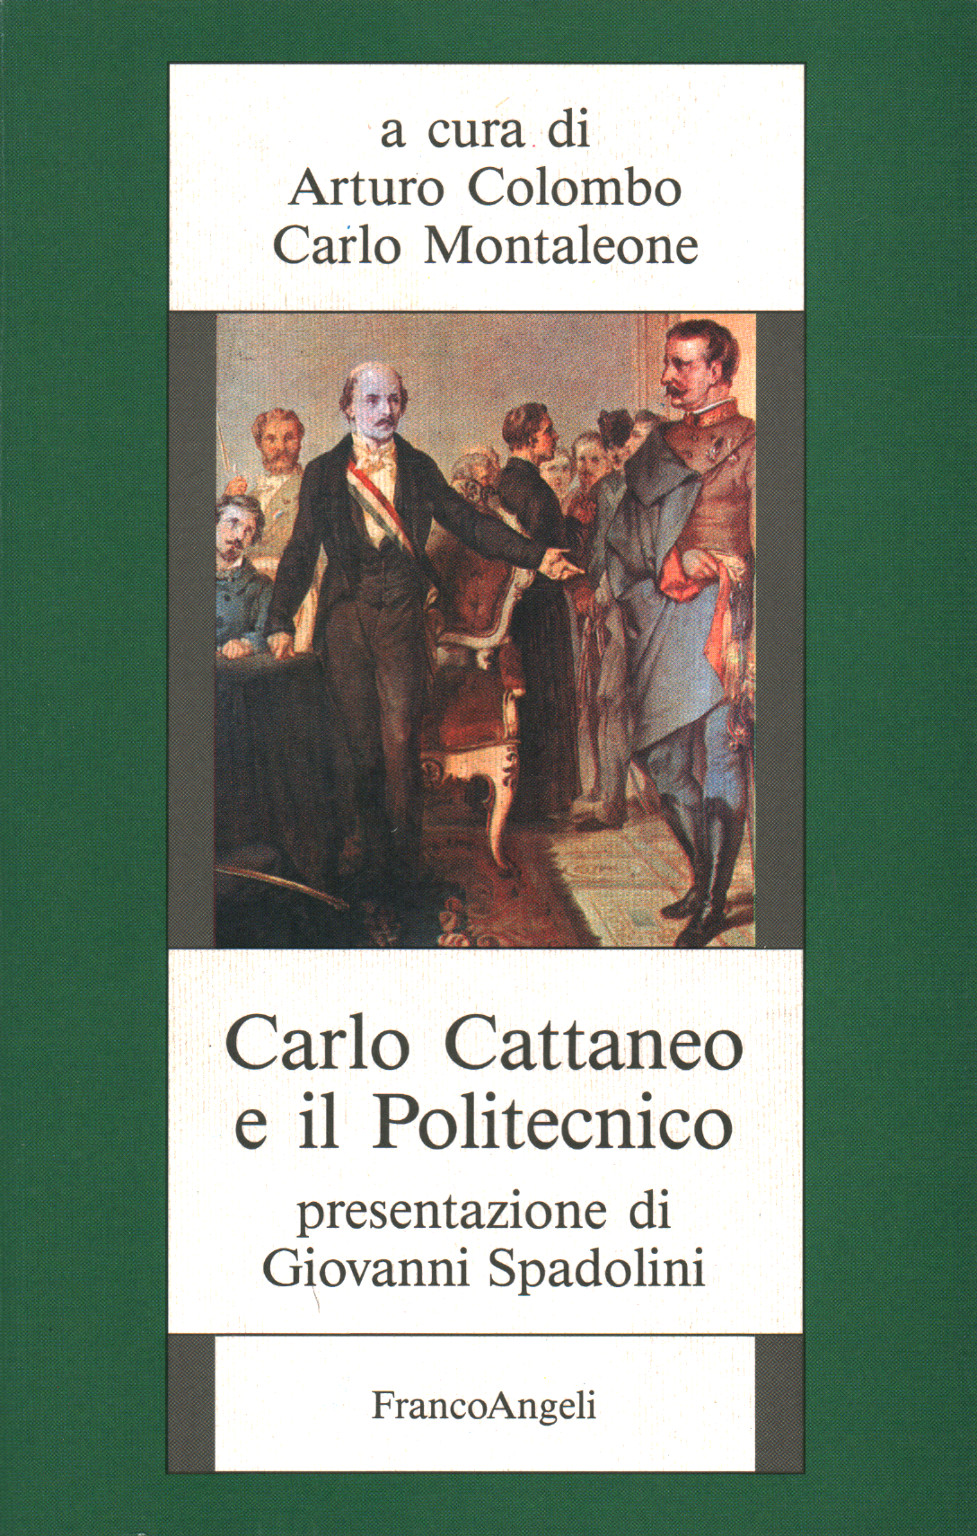 Carlo Cattaneo e il Politecnico, Arturo Colombo Carlo Montaleone